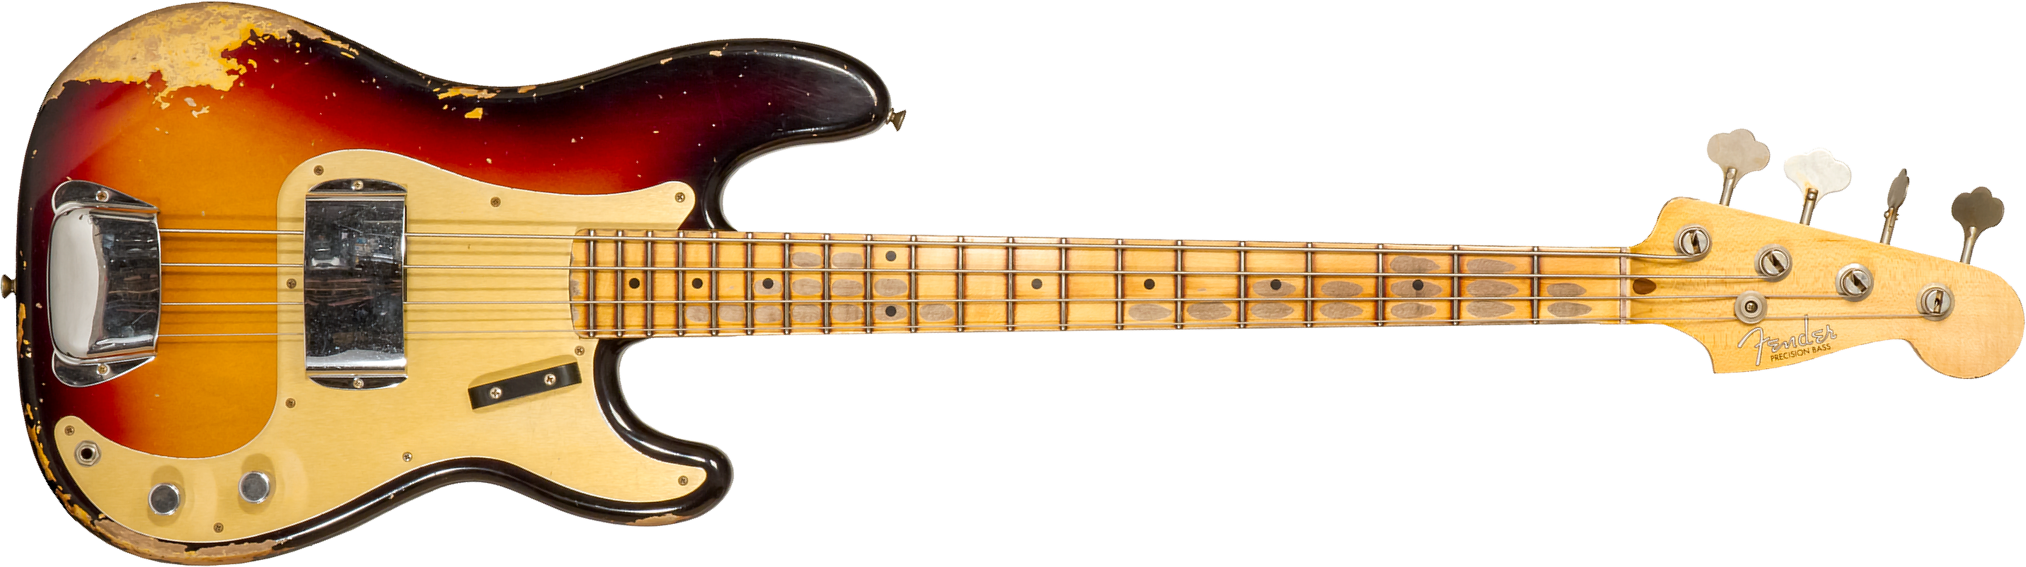 Fender Custom Shop Precision Bass 1958 Mn #cz573256 - Heavy Relic 3-color Sunburst - Solidbody E-bass - Main picture